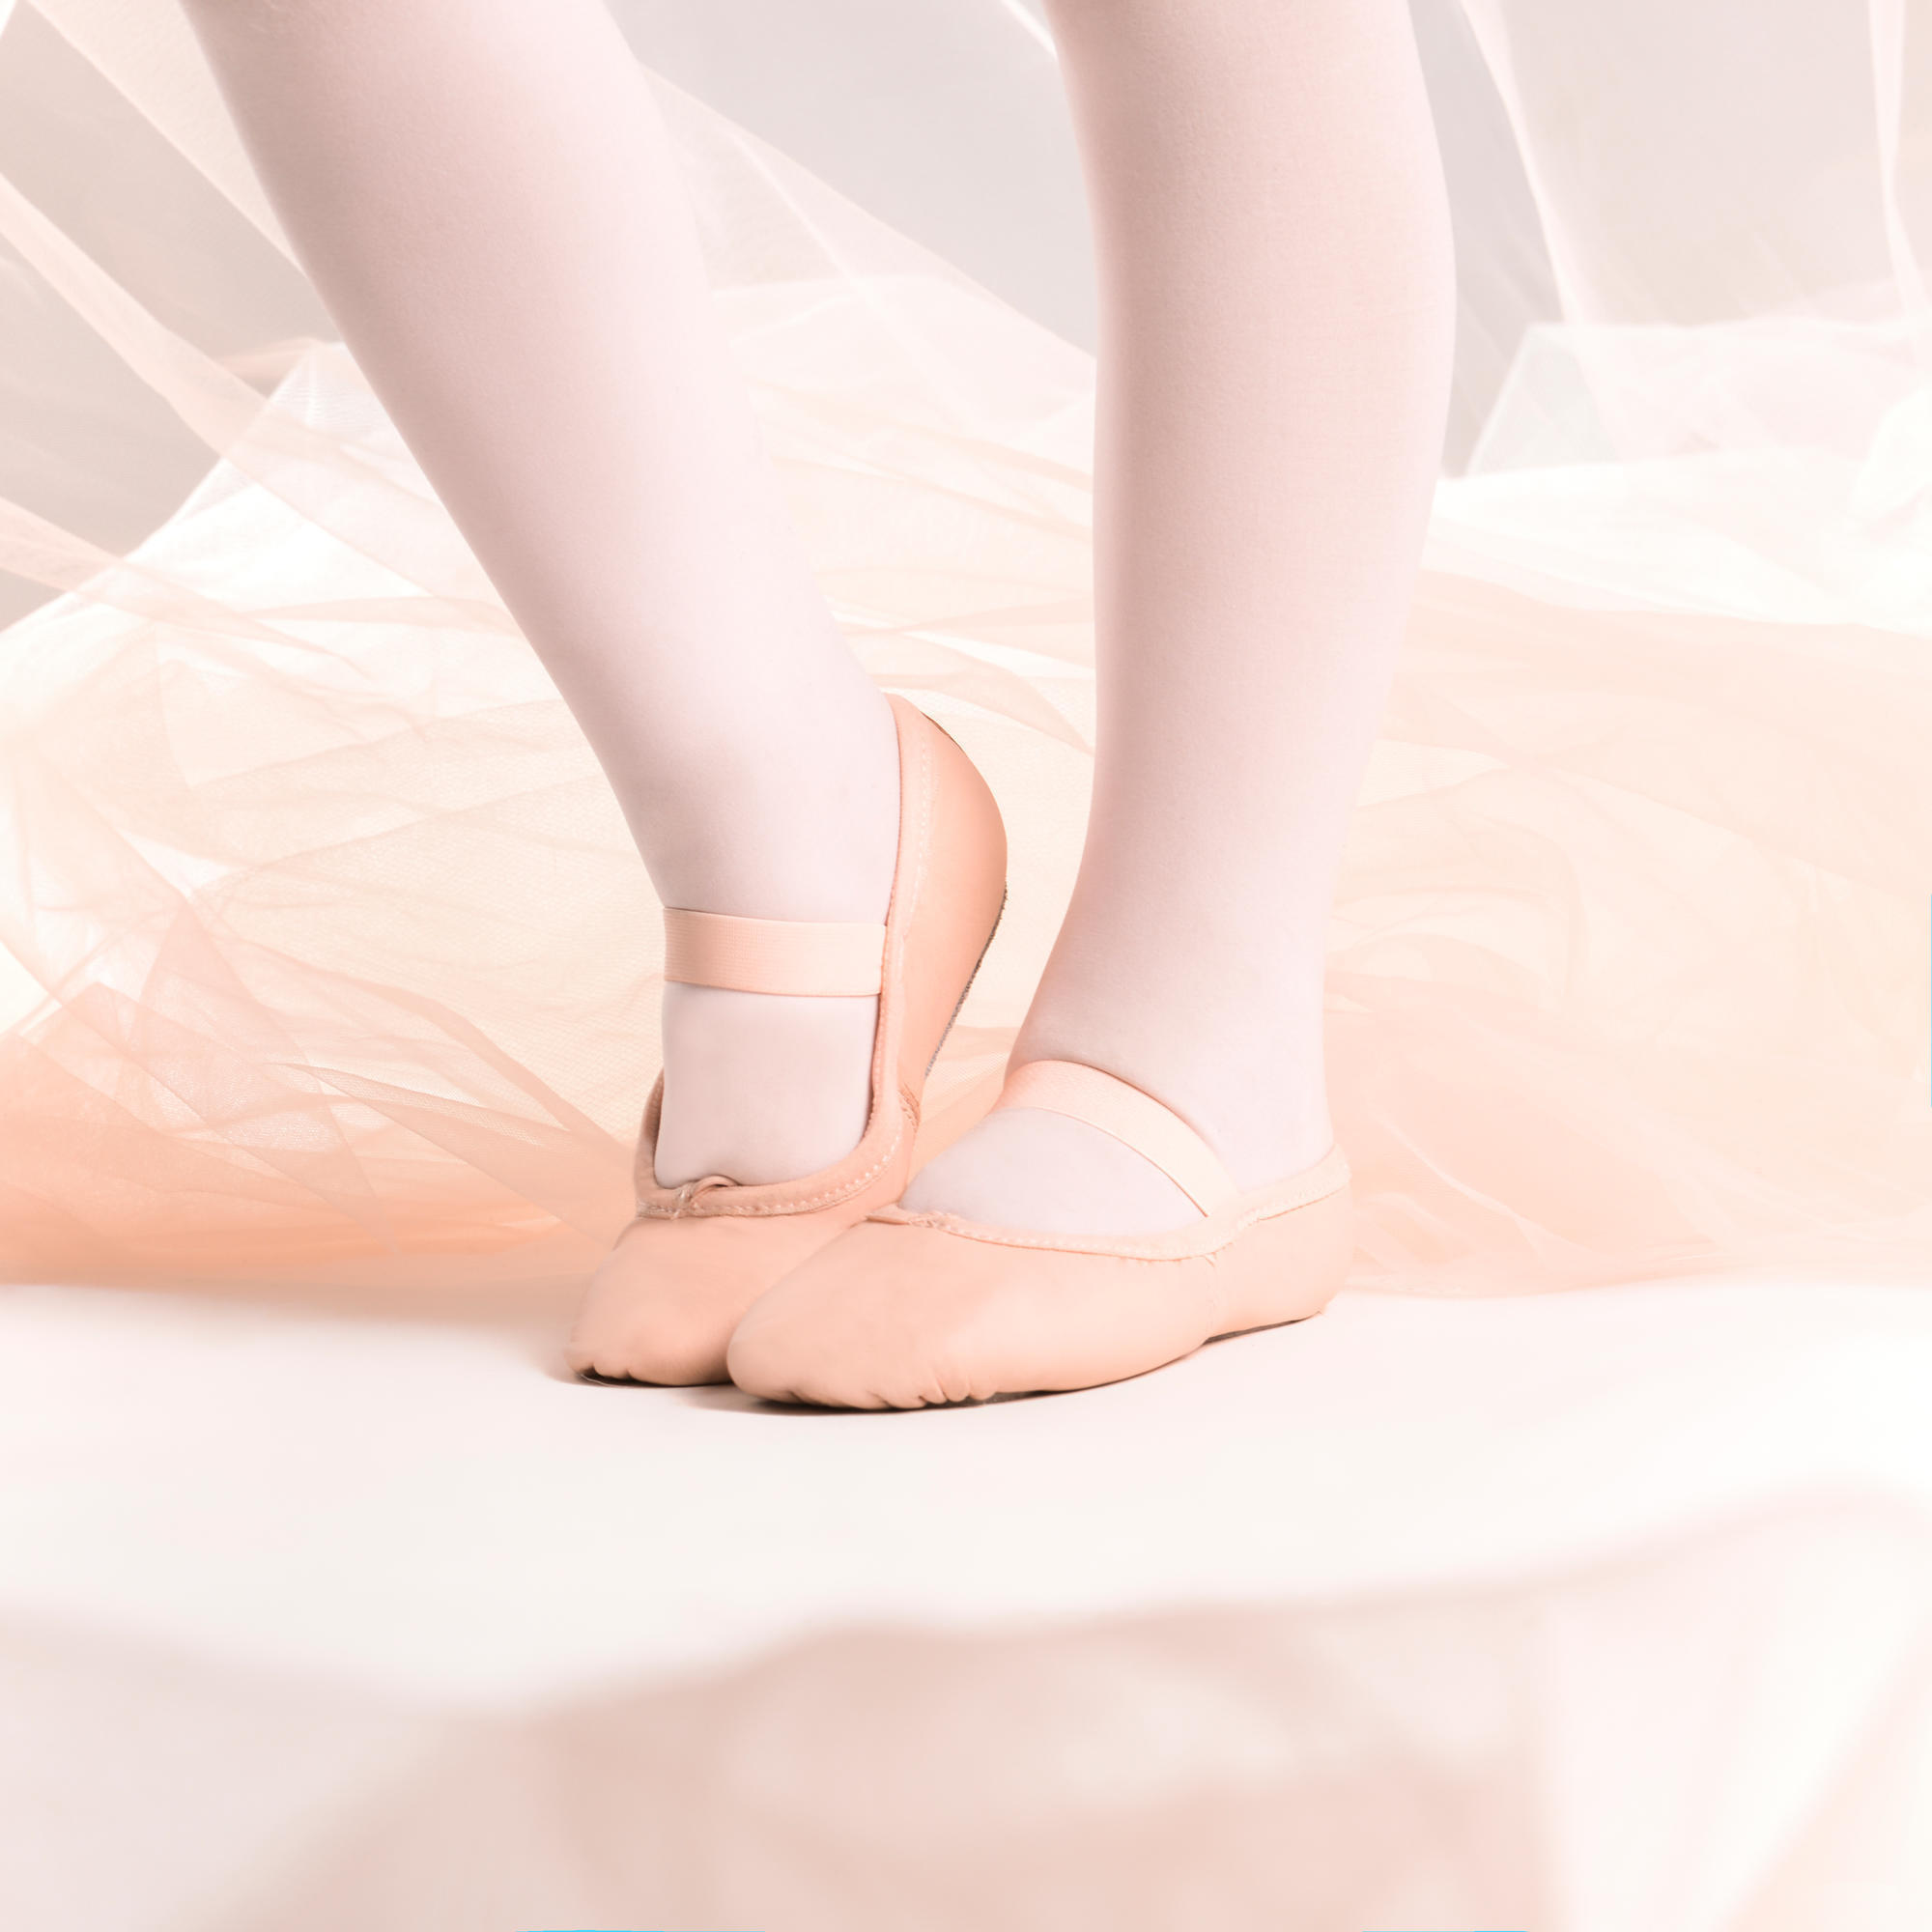 Demi-poante balet piele talpă întreagă roz mărimile 25-40 STAREVER decathlon.ro